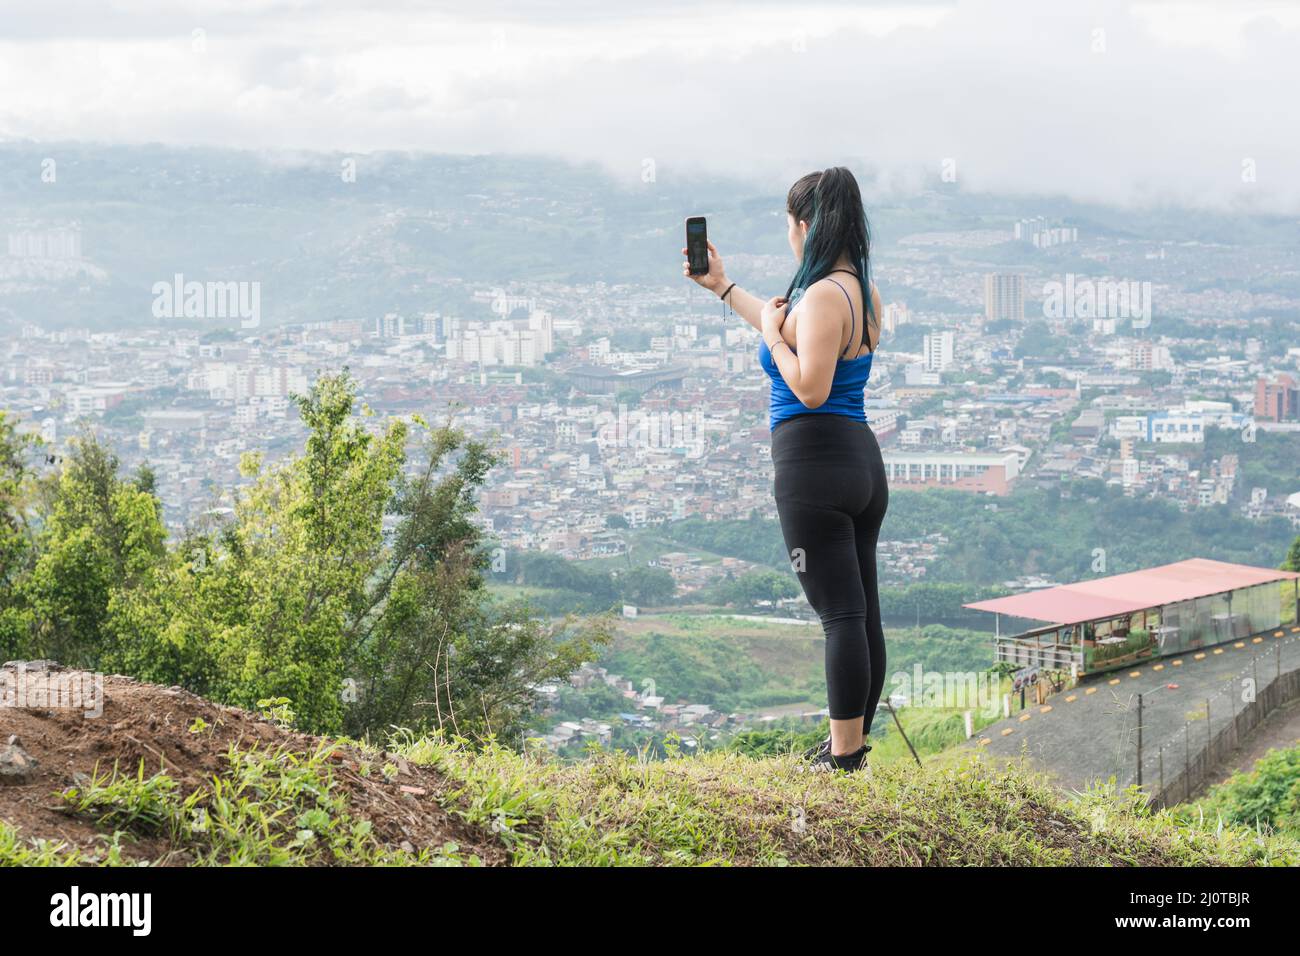 Junge Frau. lateinische Influencerin, die ein Video für ihre sozialen Netzwerke auf einem Berg aufzeichnet, im Hintergrund die Stadt Pereira-Kolumbien Stockfoto